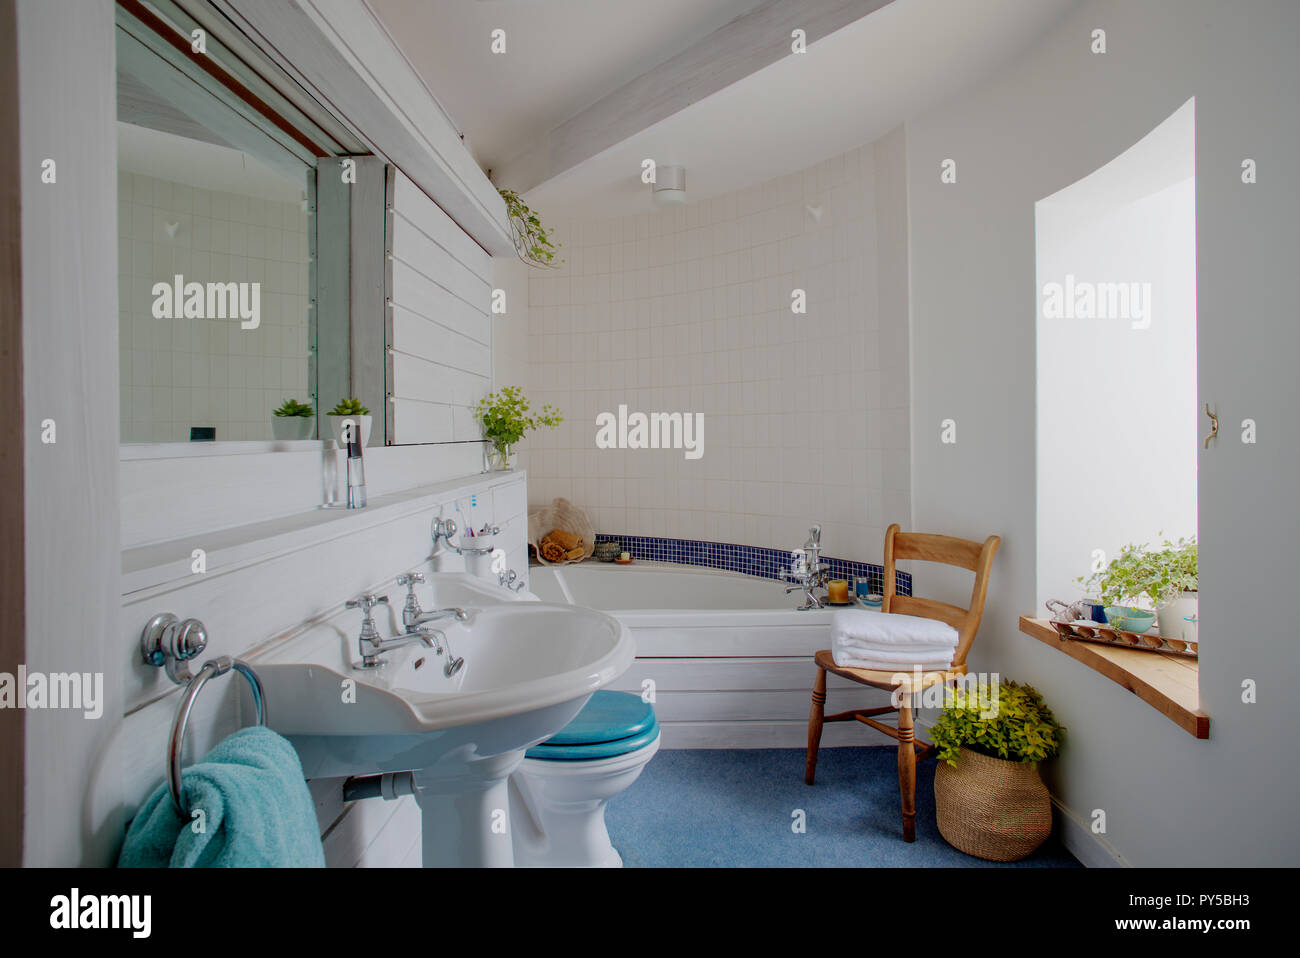 Une large vue tourné d'une élégante salle de bains de l'intérieur, un motif en mosaïque bleu traverse le mur carrelé au-dessus de la baignoire à l'arrière de la salle. Banque D'Images